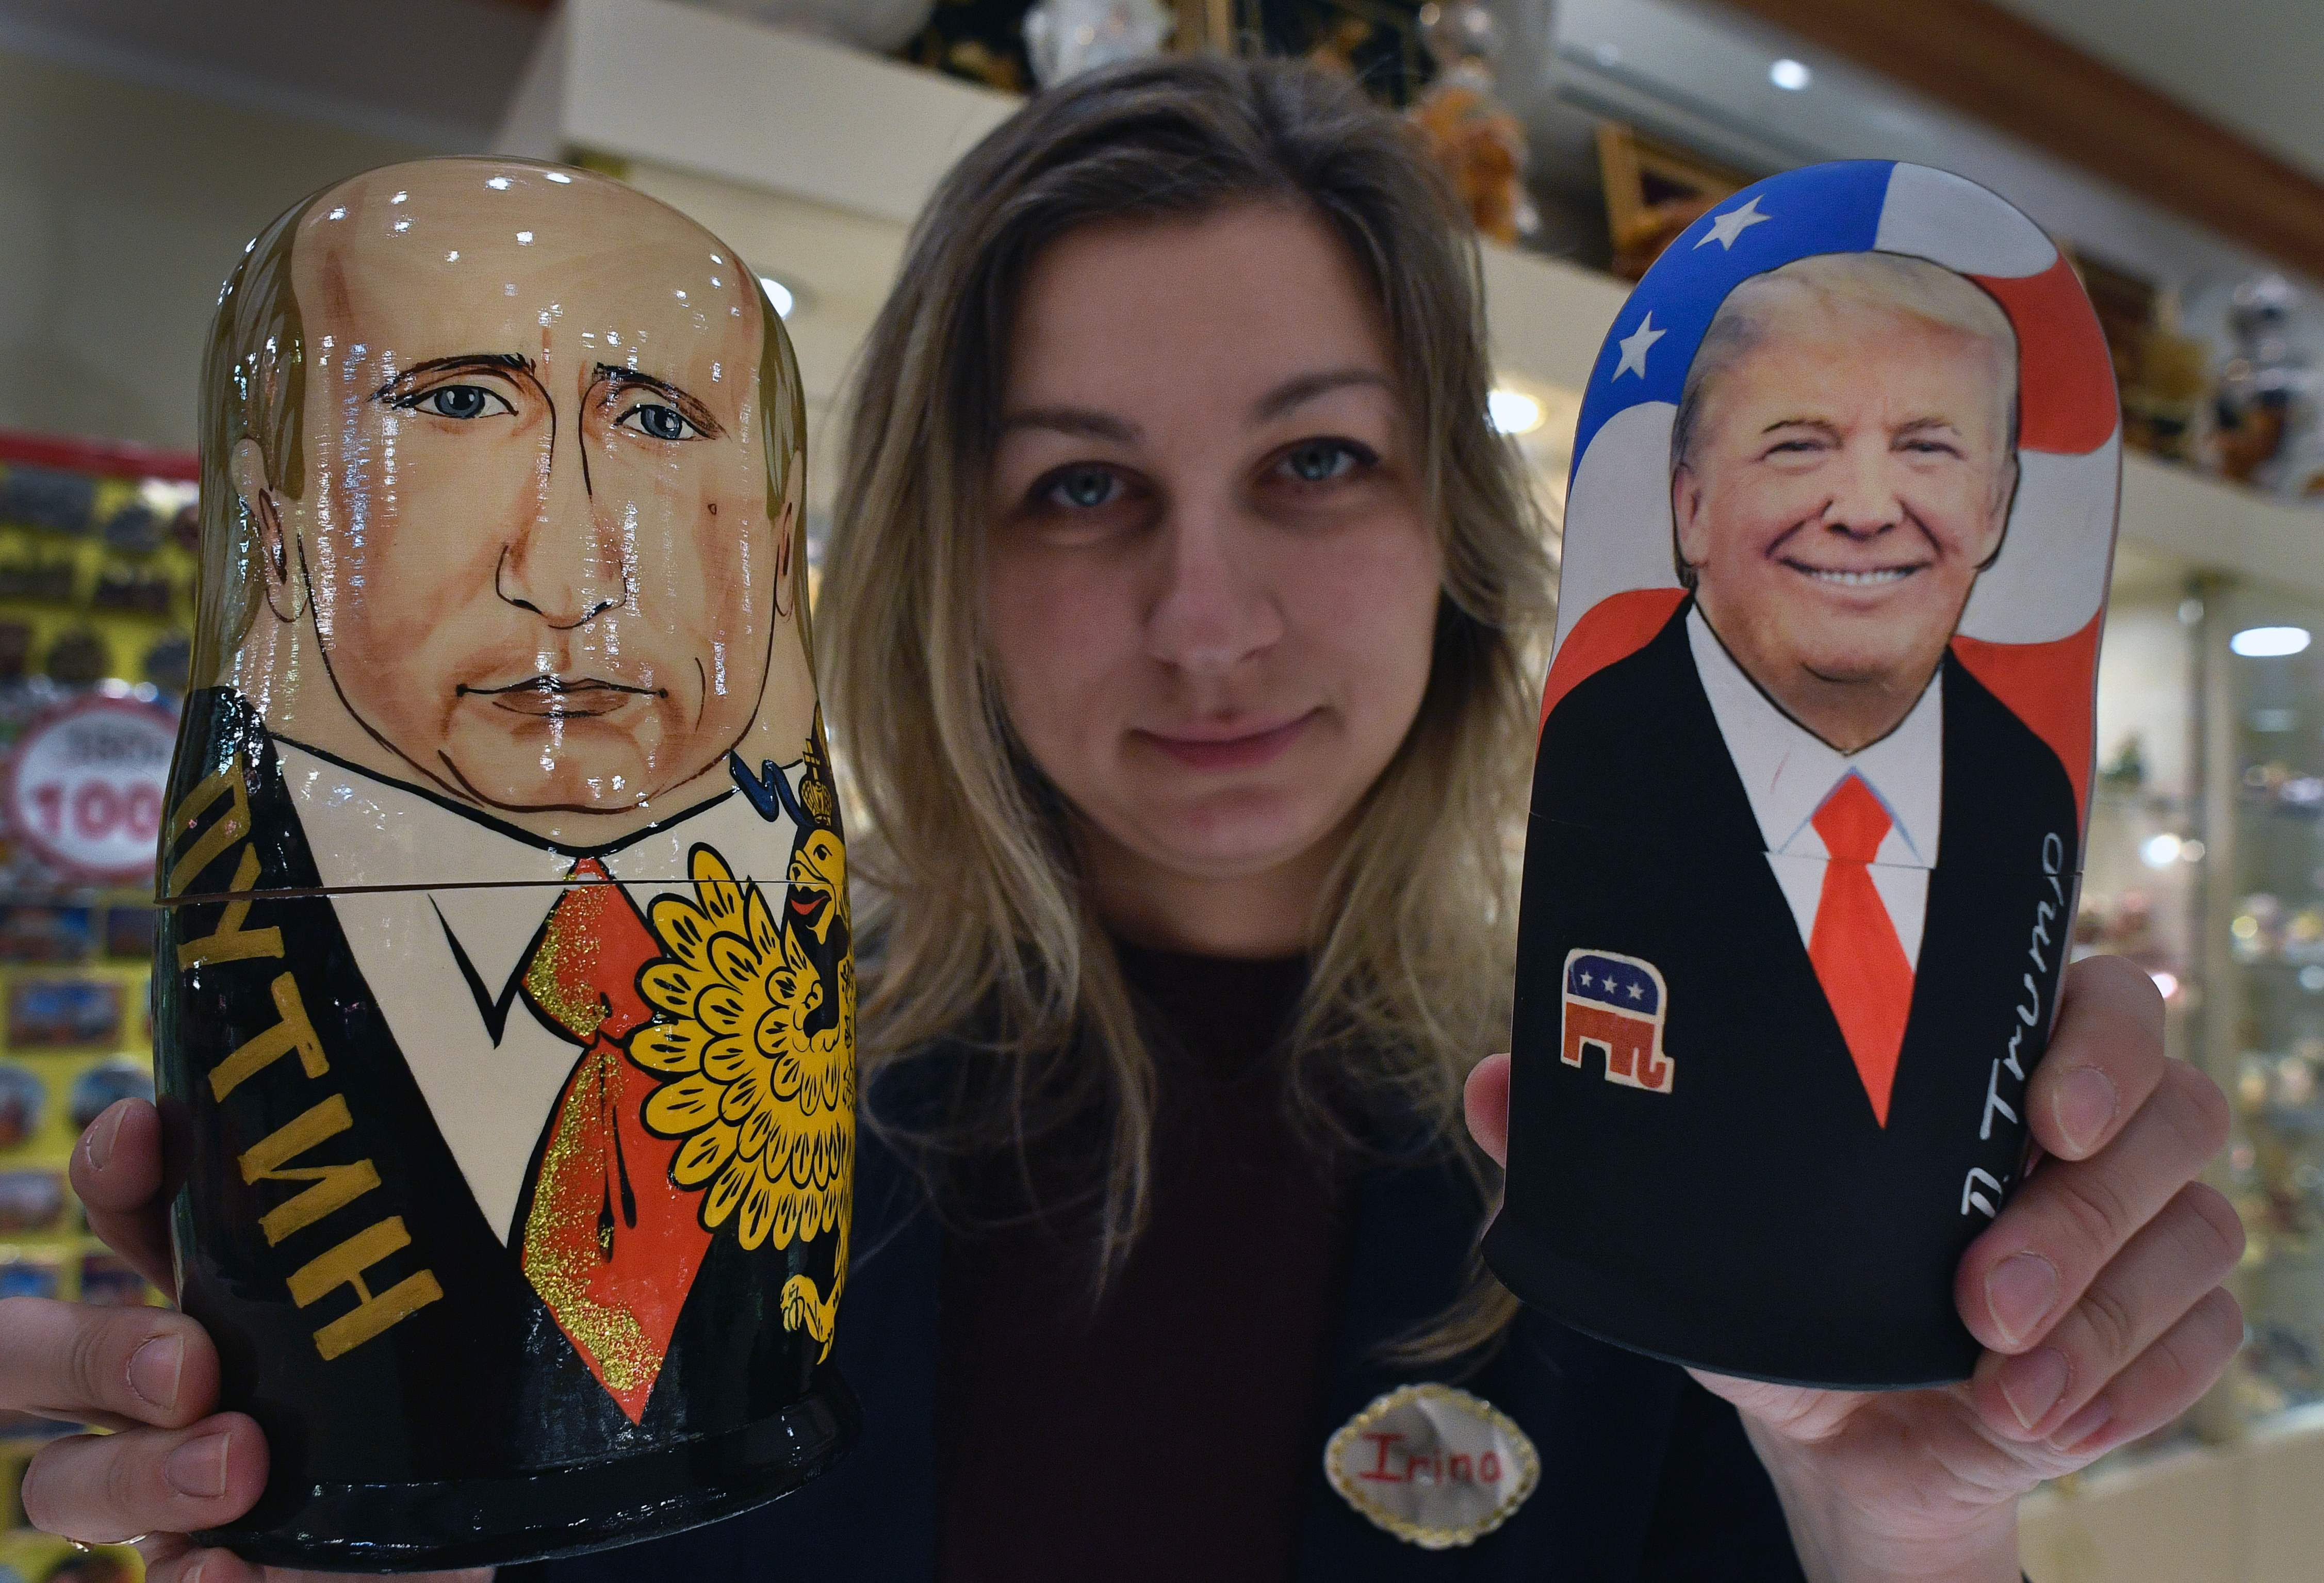 موظفة بمحل هدايا فى روسيا تحمل دمى خشبية مرسوم عليها صور بوتين وترامب